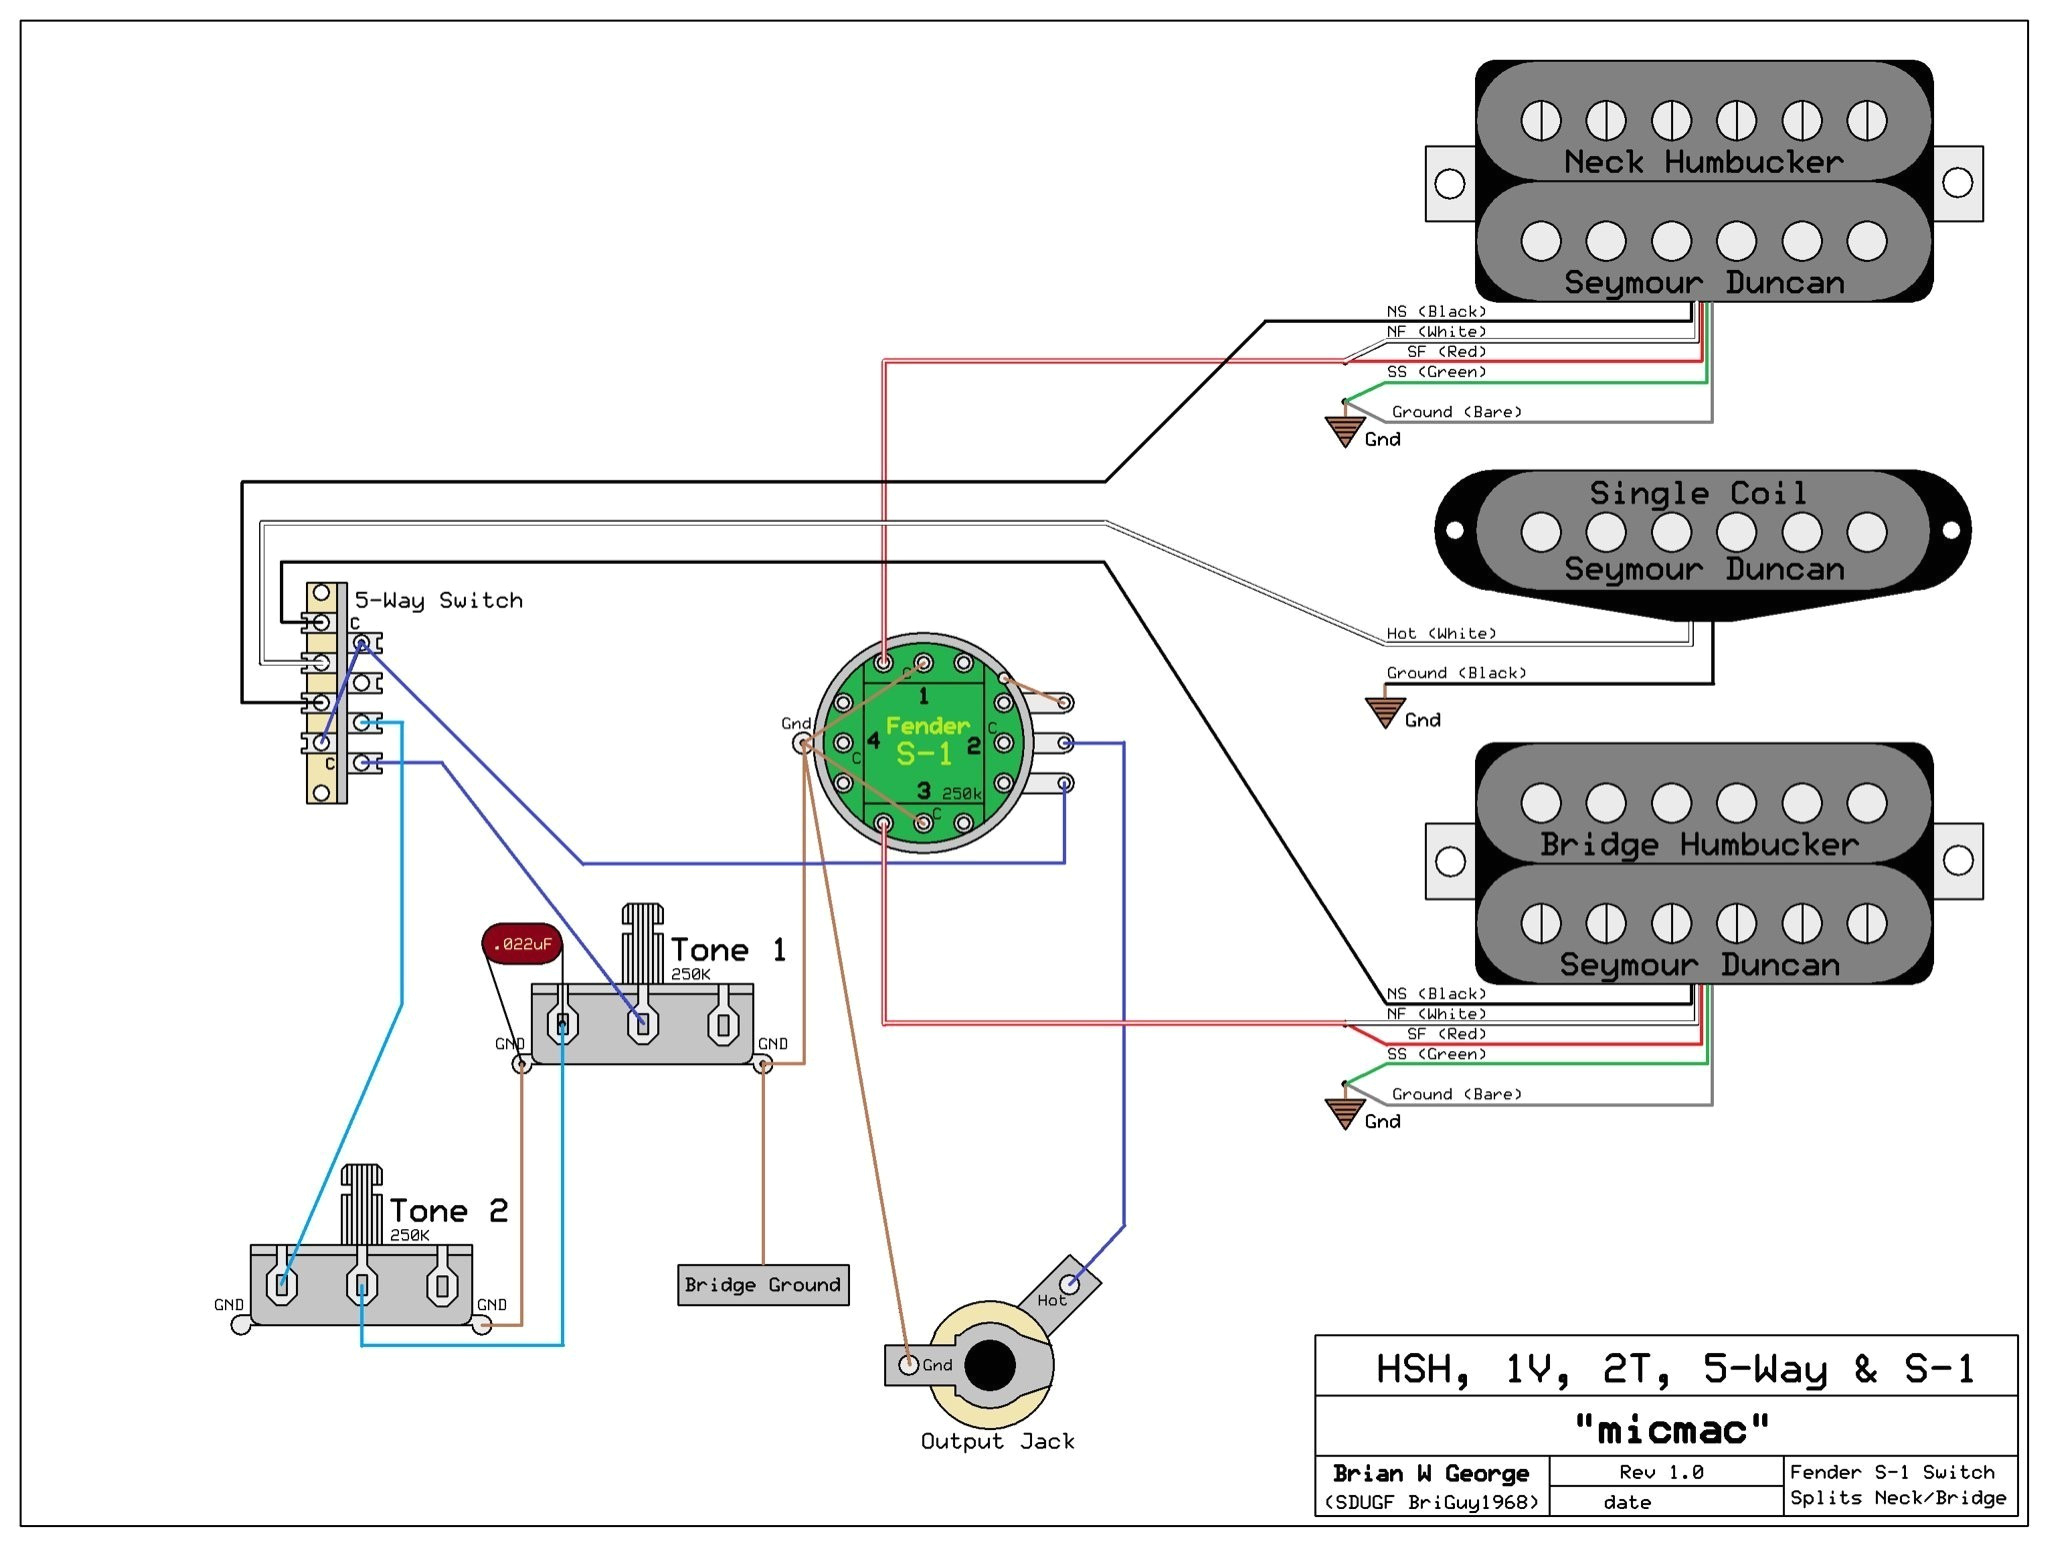 emg 89 81 21 wiring diagram wiring diagrams emg 89 81 21 wiring diagram